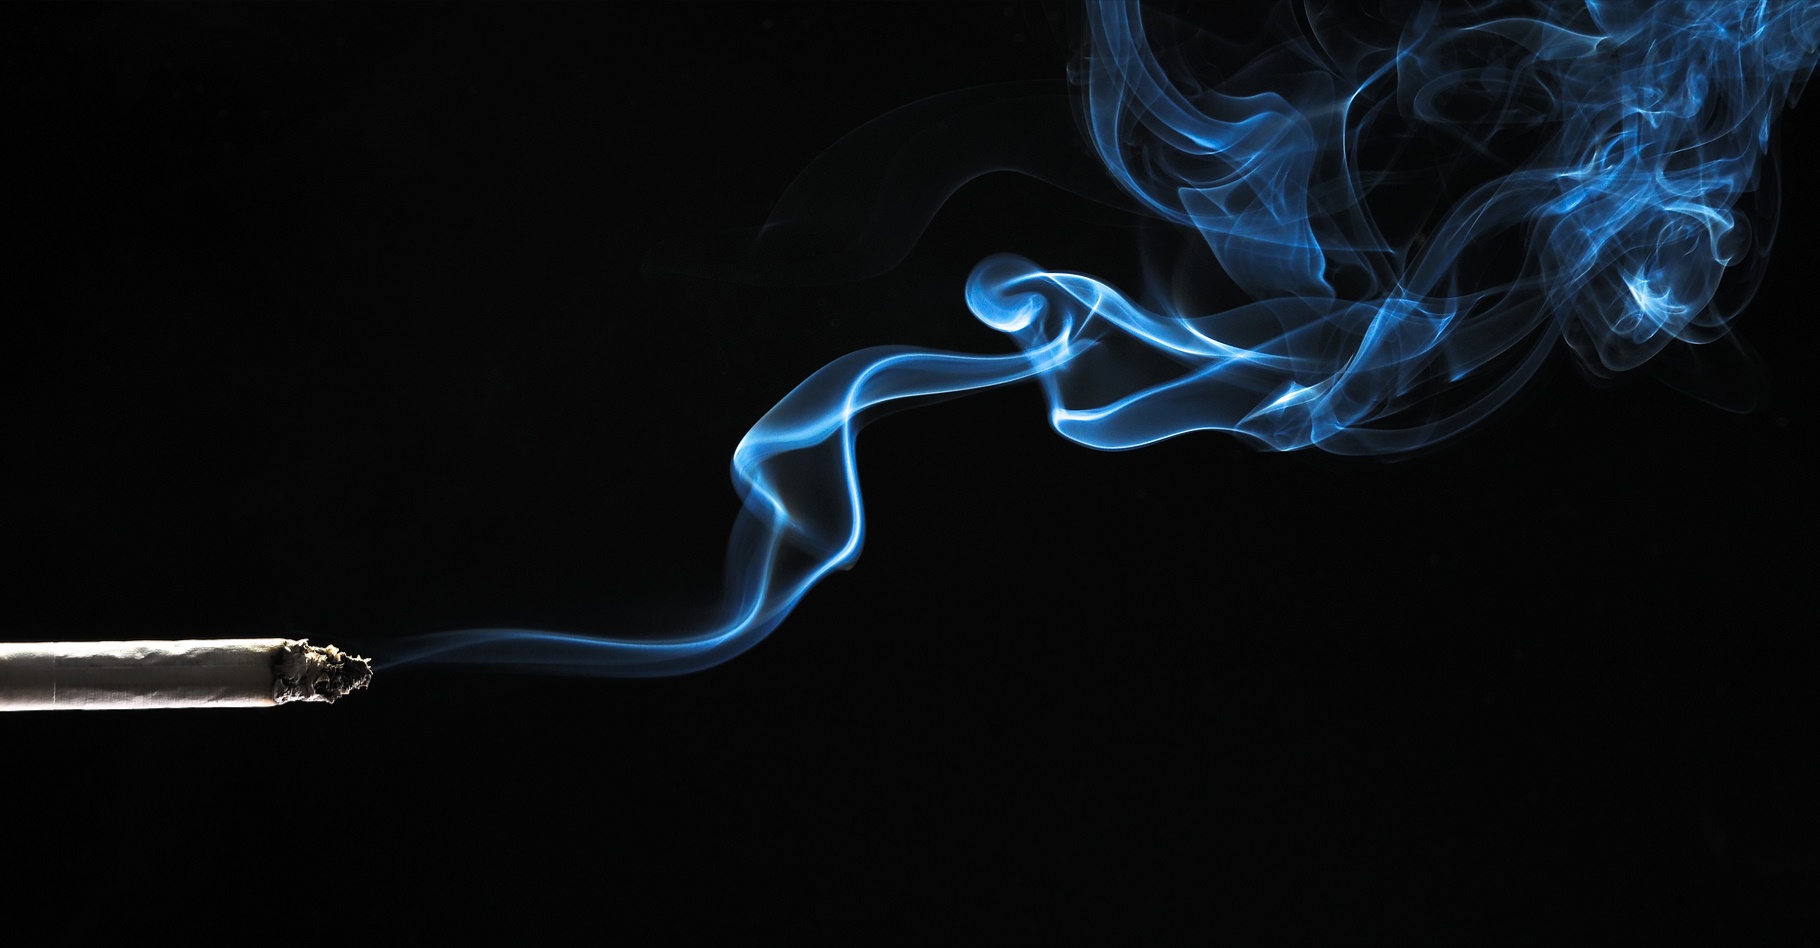 La machine fume comme un humain des cigarettes normales ou électroniques. © Fotokon, Shutterstock